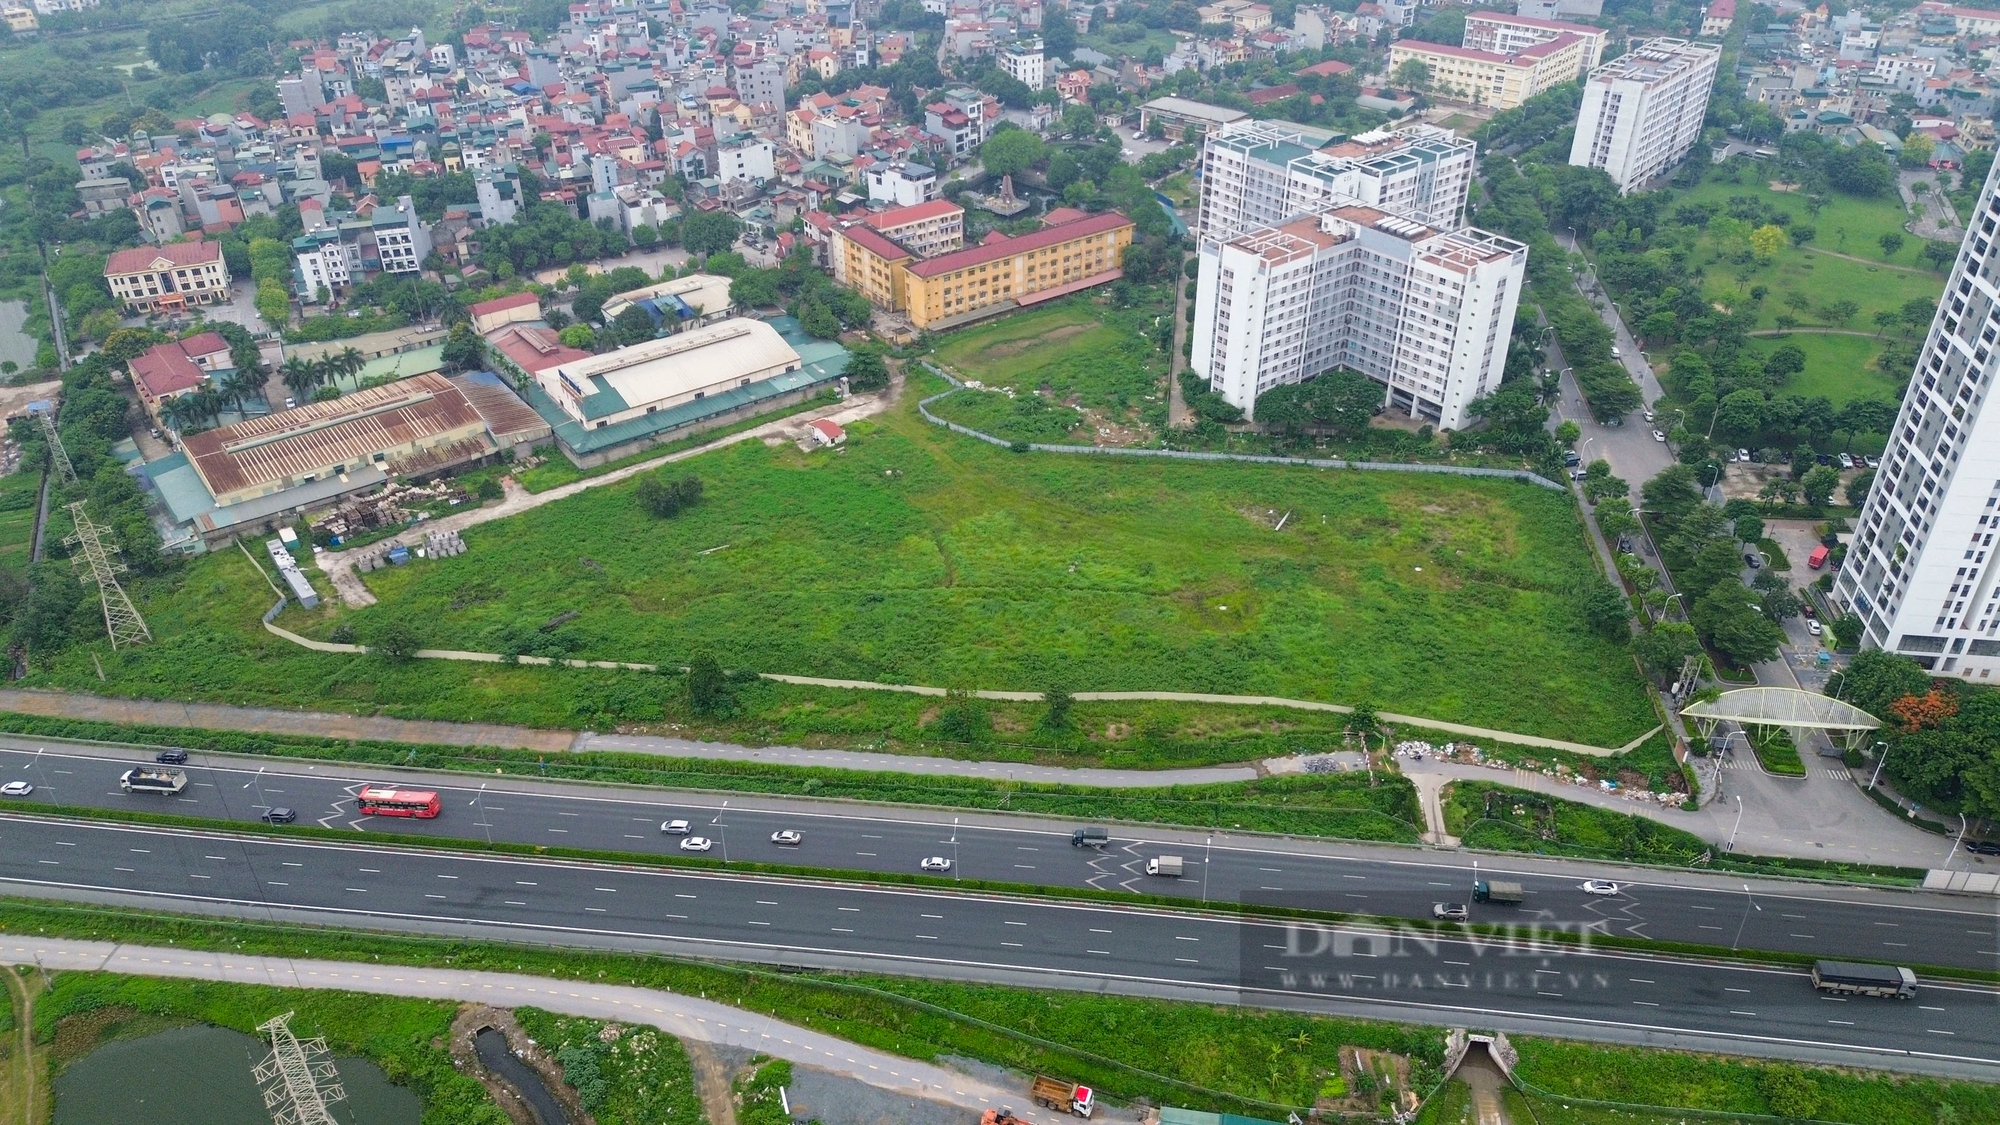 Sau gần 2 thập kỷ, cỏ vẫn mọc xanh tốt tại vị trí xây bệnh viện tiêu chuẩn quốc tế 5 sao ở Hà Nội- Ảnh 1.